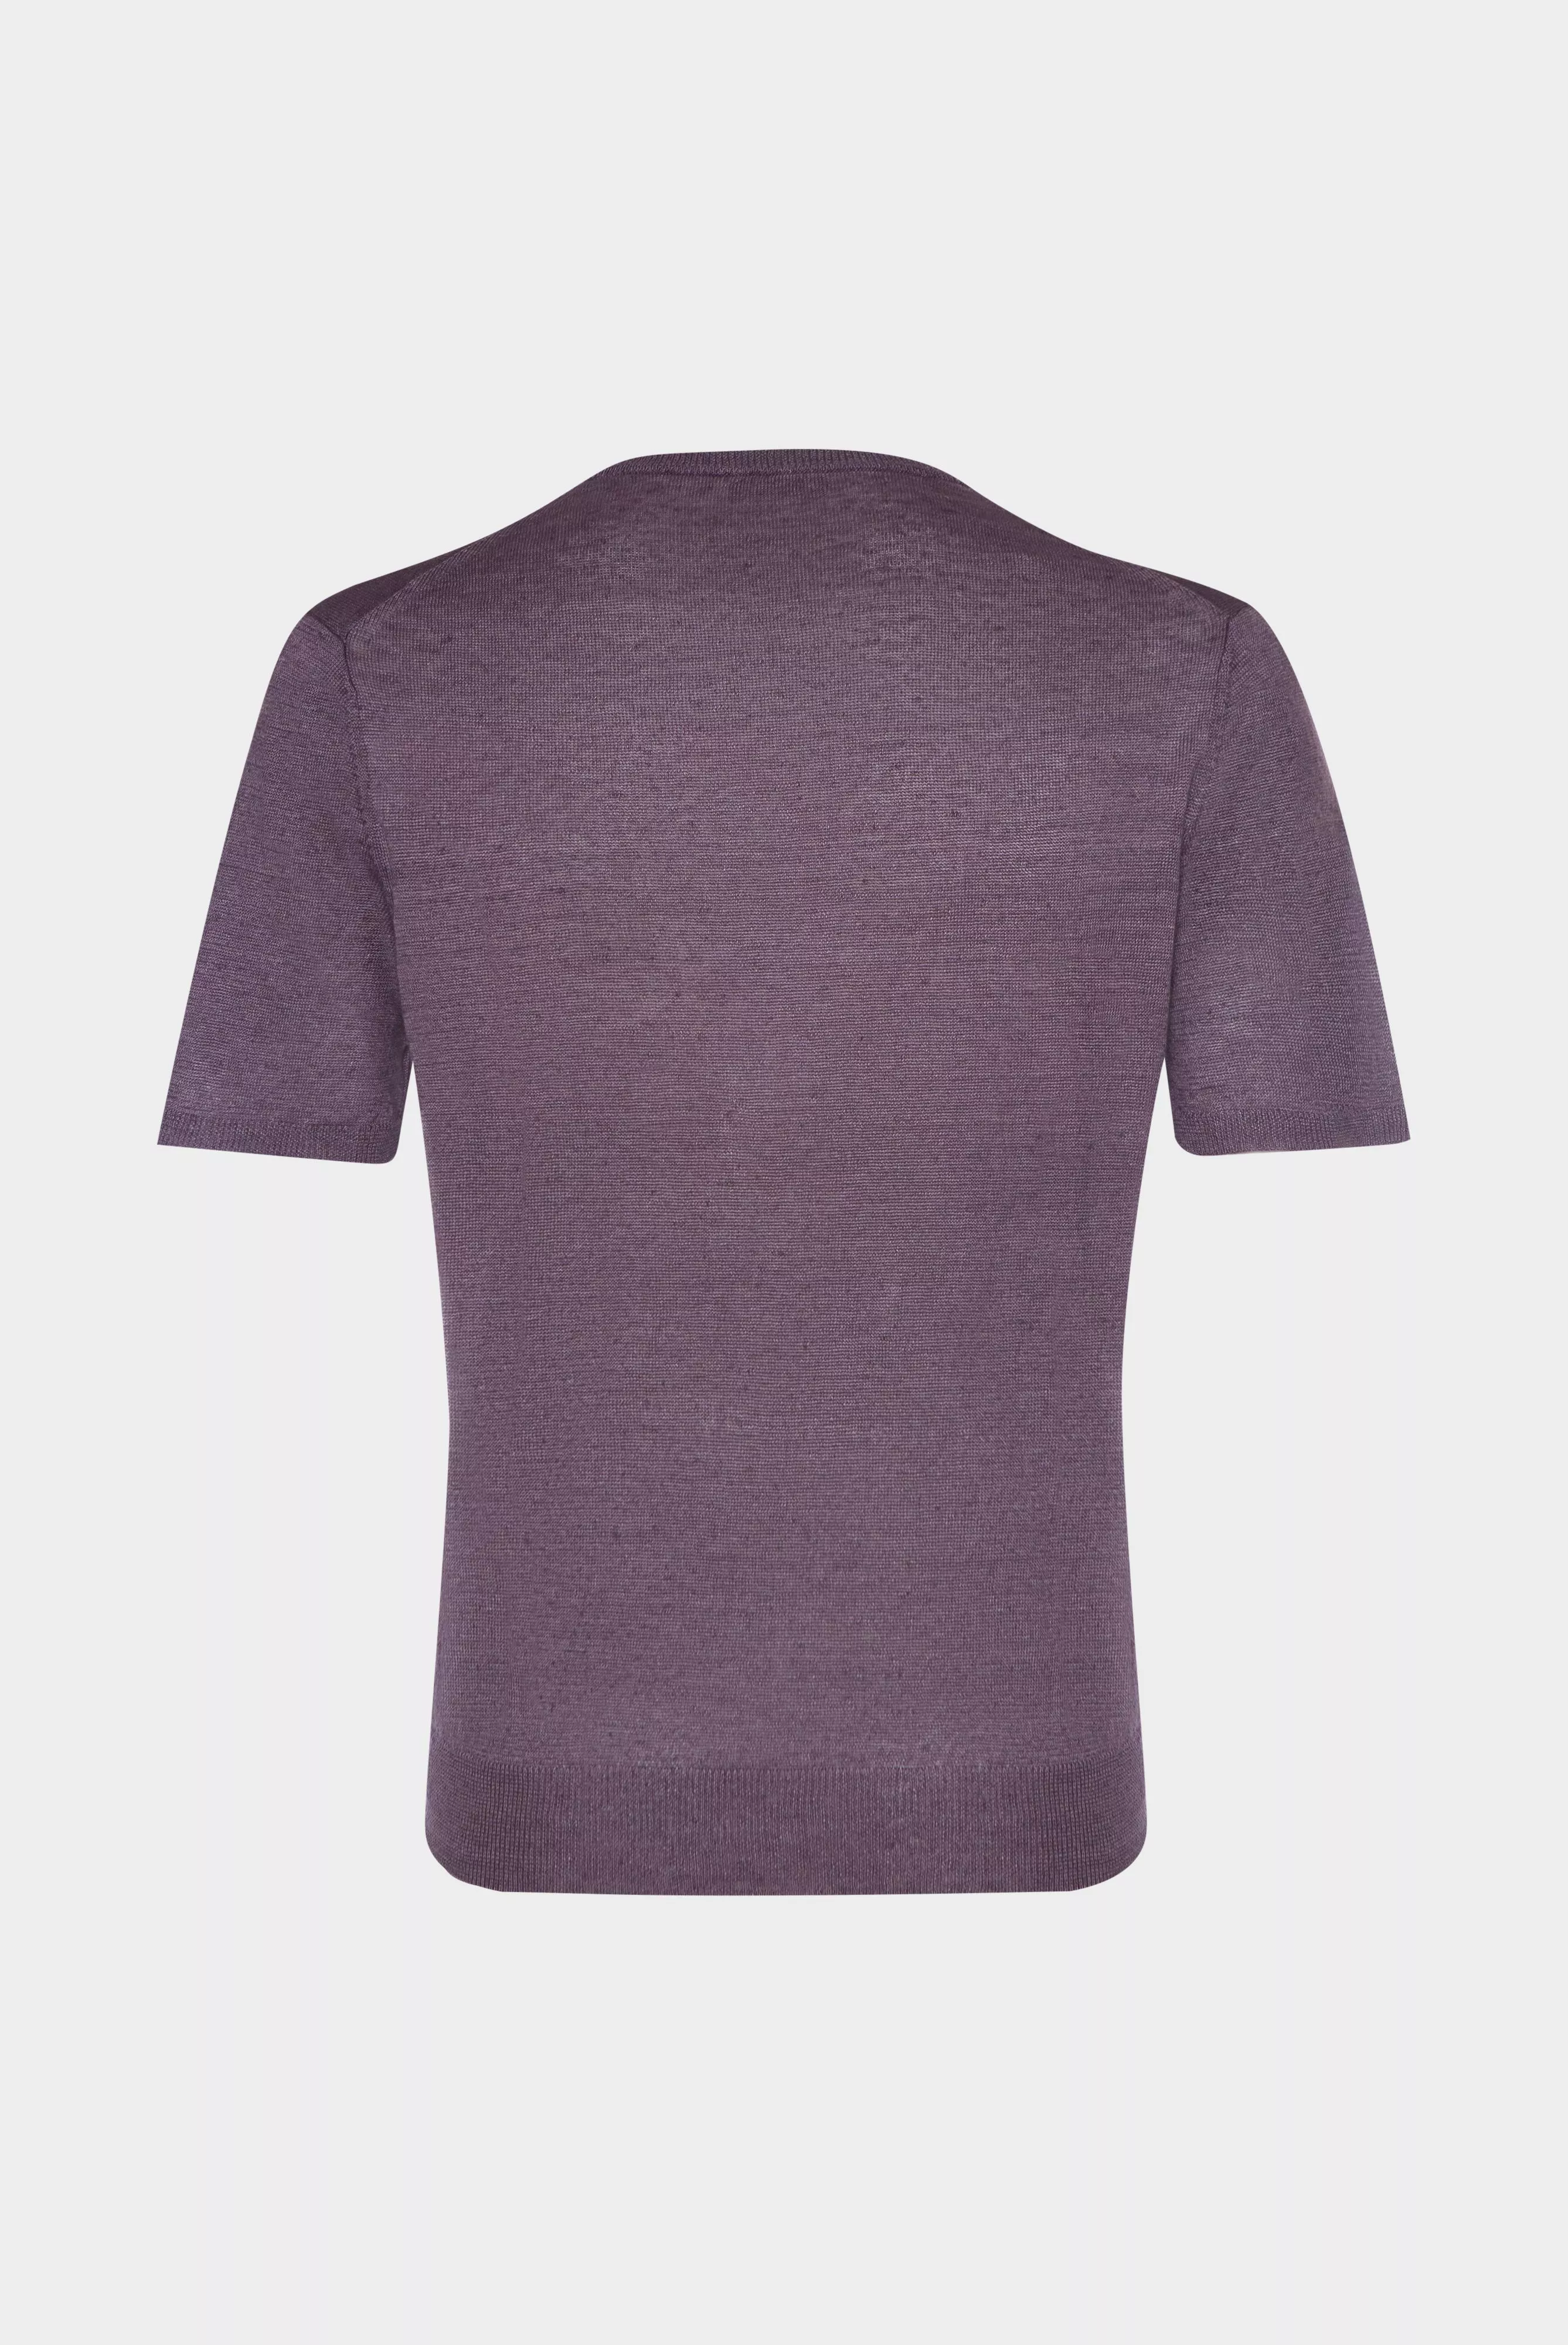 рубашка-поло SELINO фиолетовый SELINO_S00169_680 ,photo 3